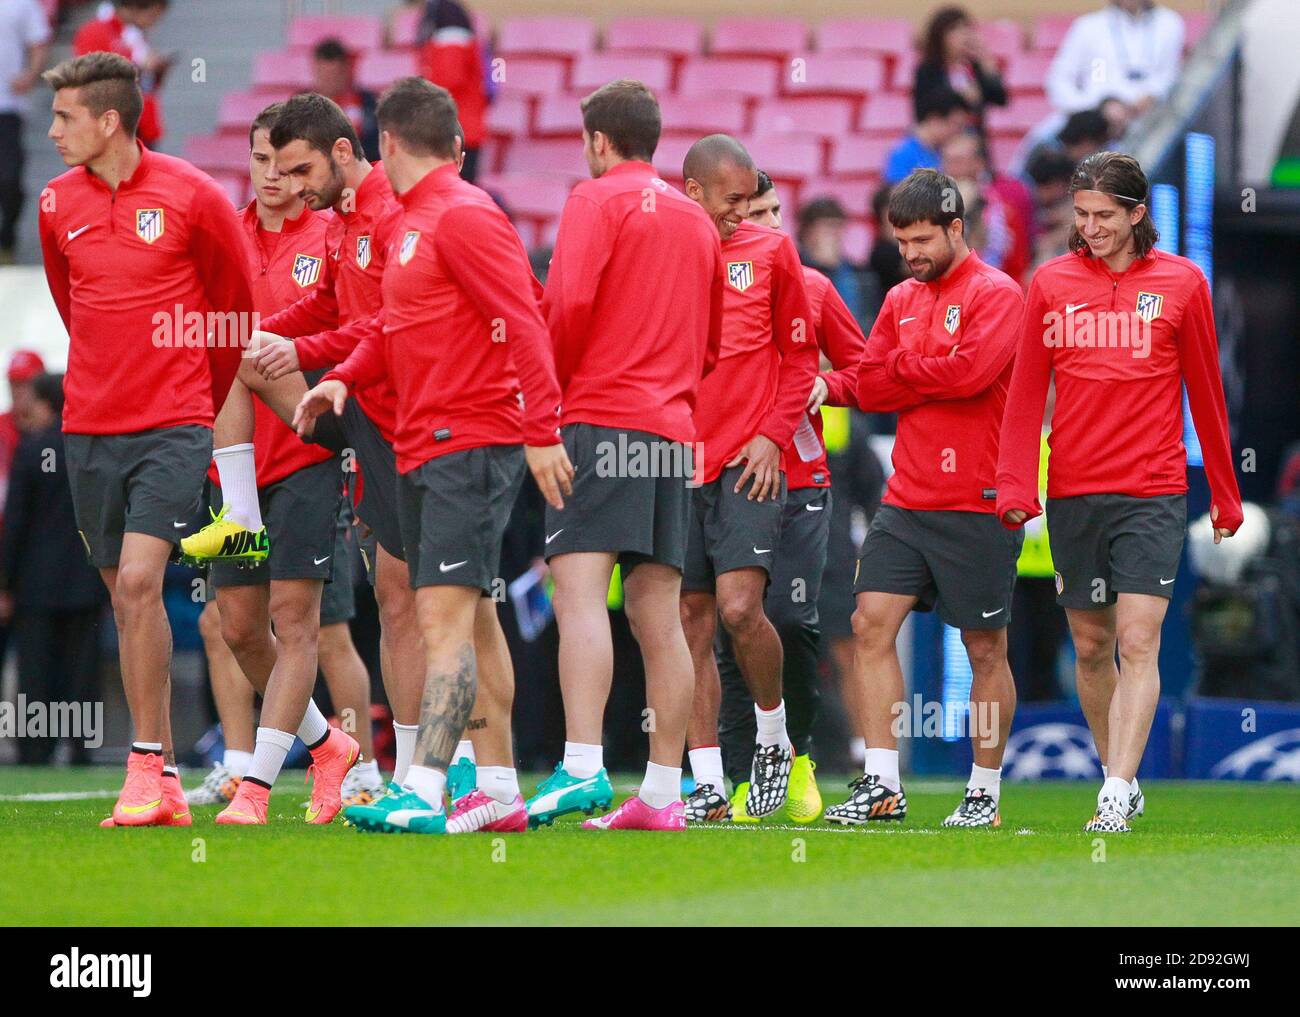 Atletico Madrid Team Photo Stockfotos und -bilder Kaufen - Alamy